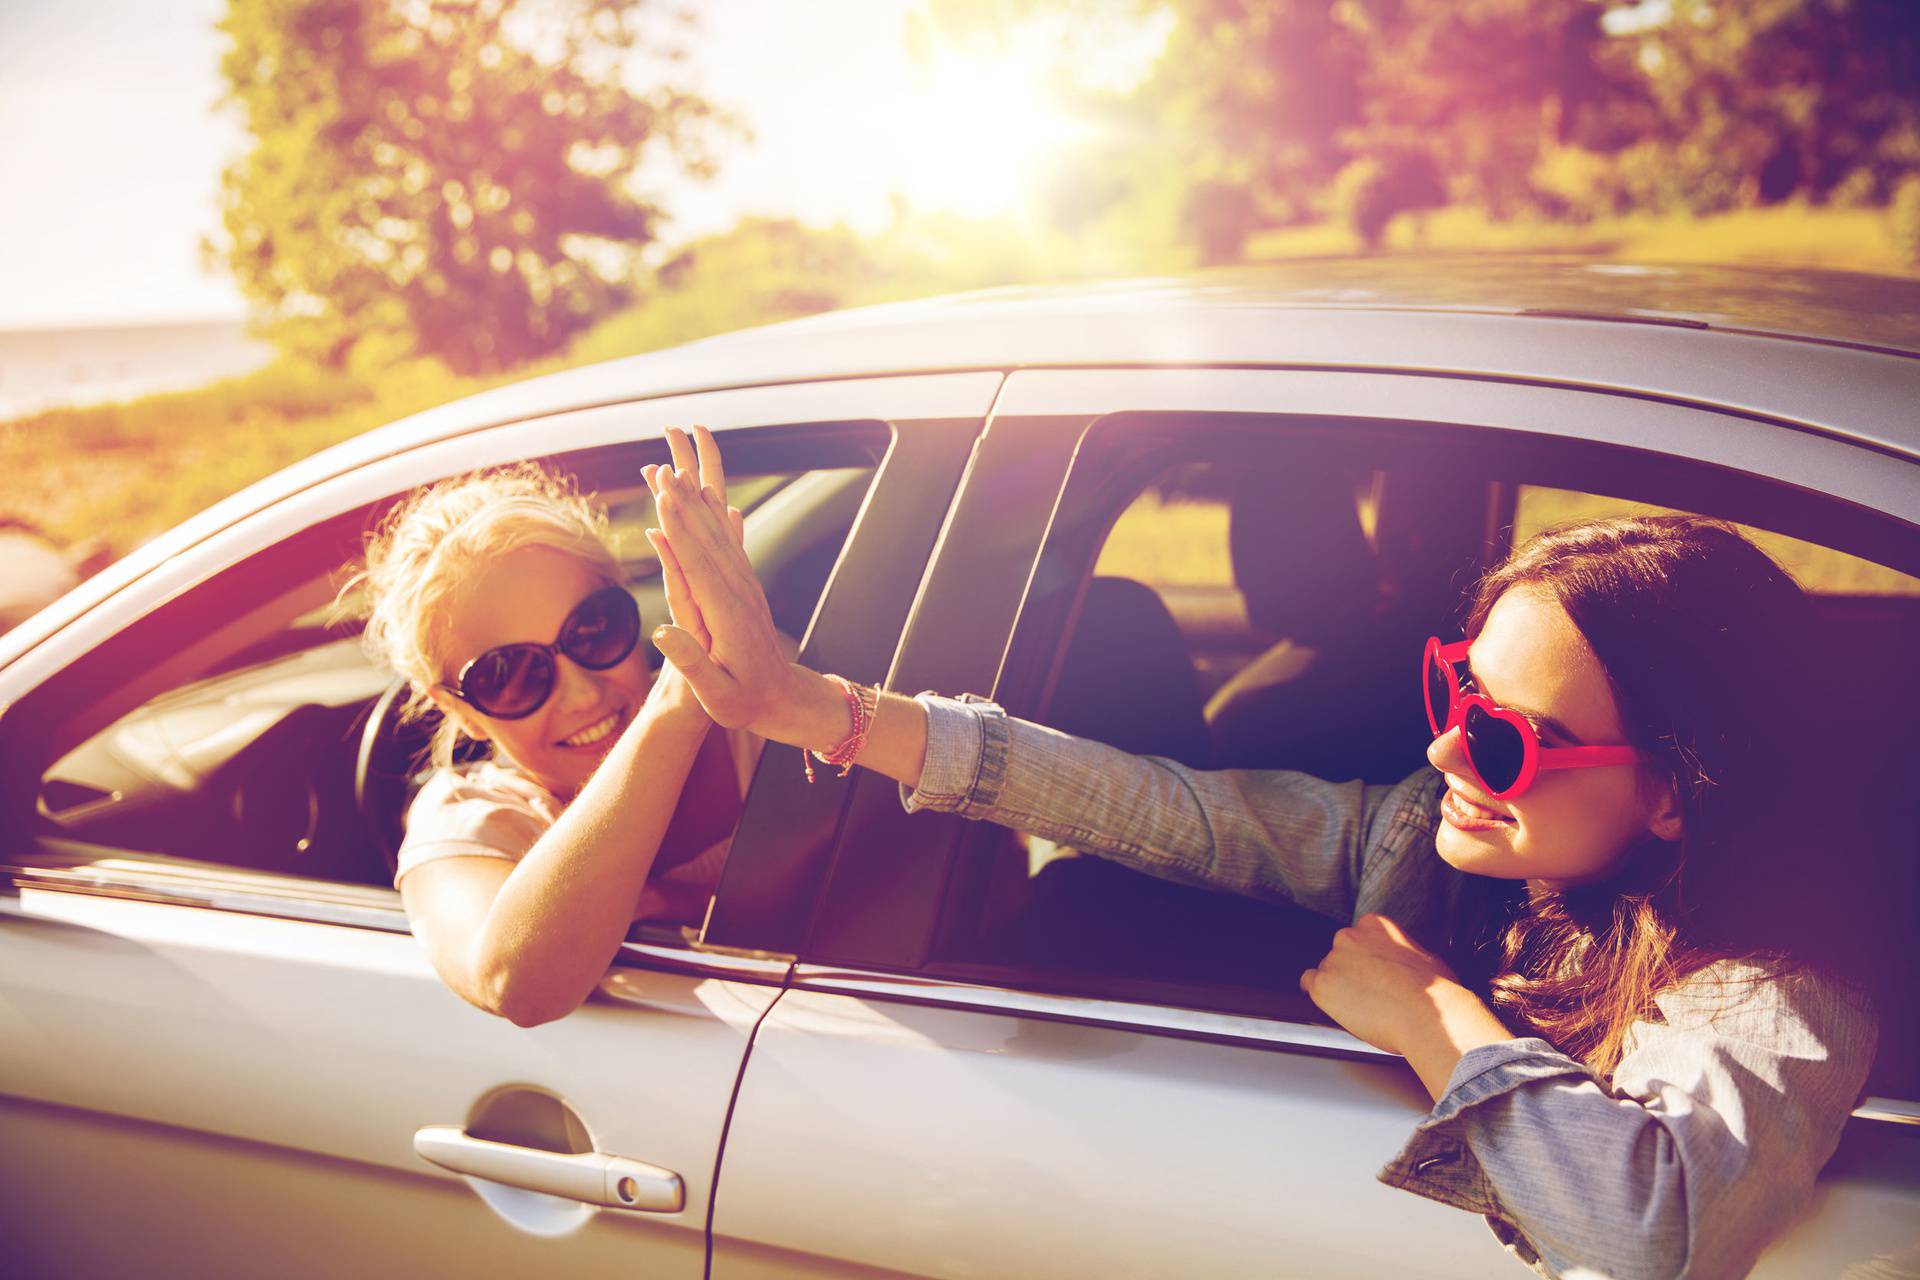 happy teenage girls or women in car at seaside